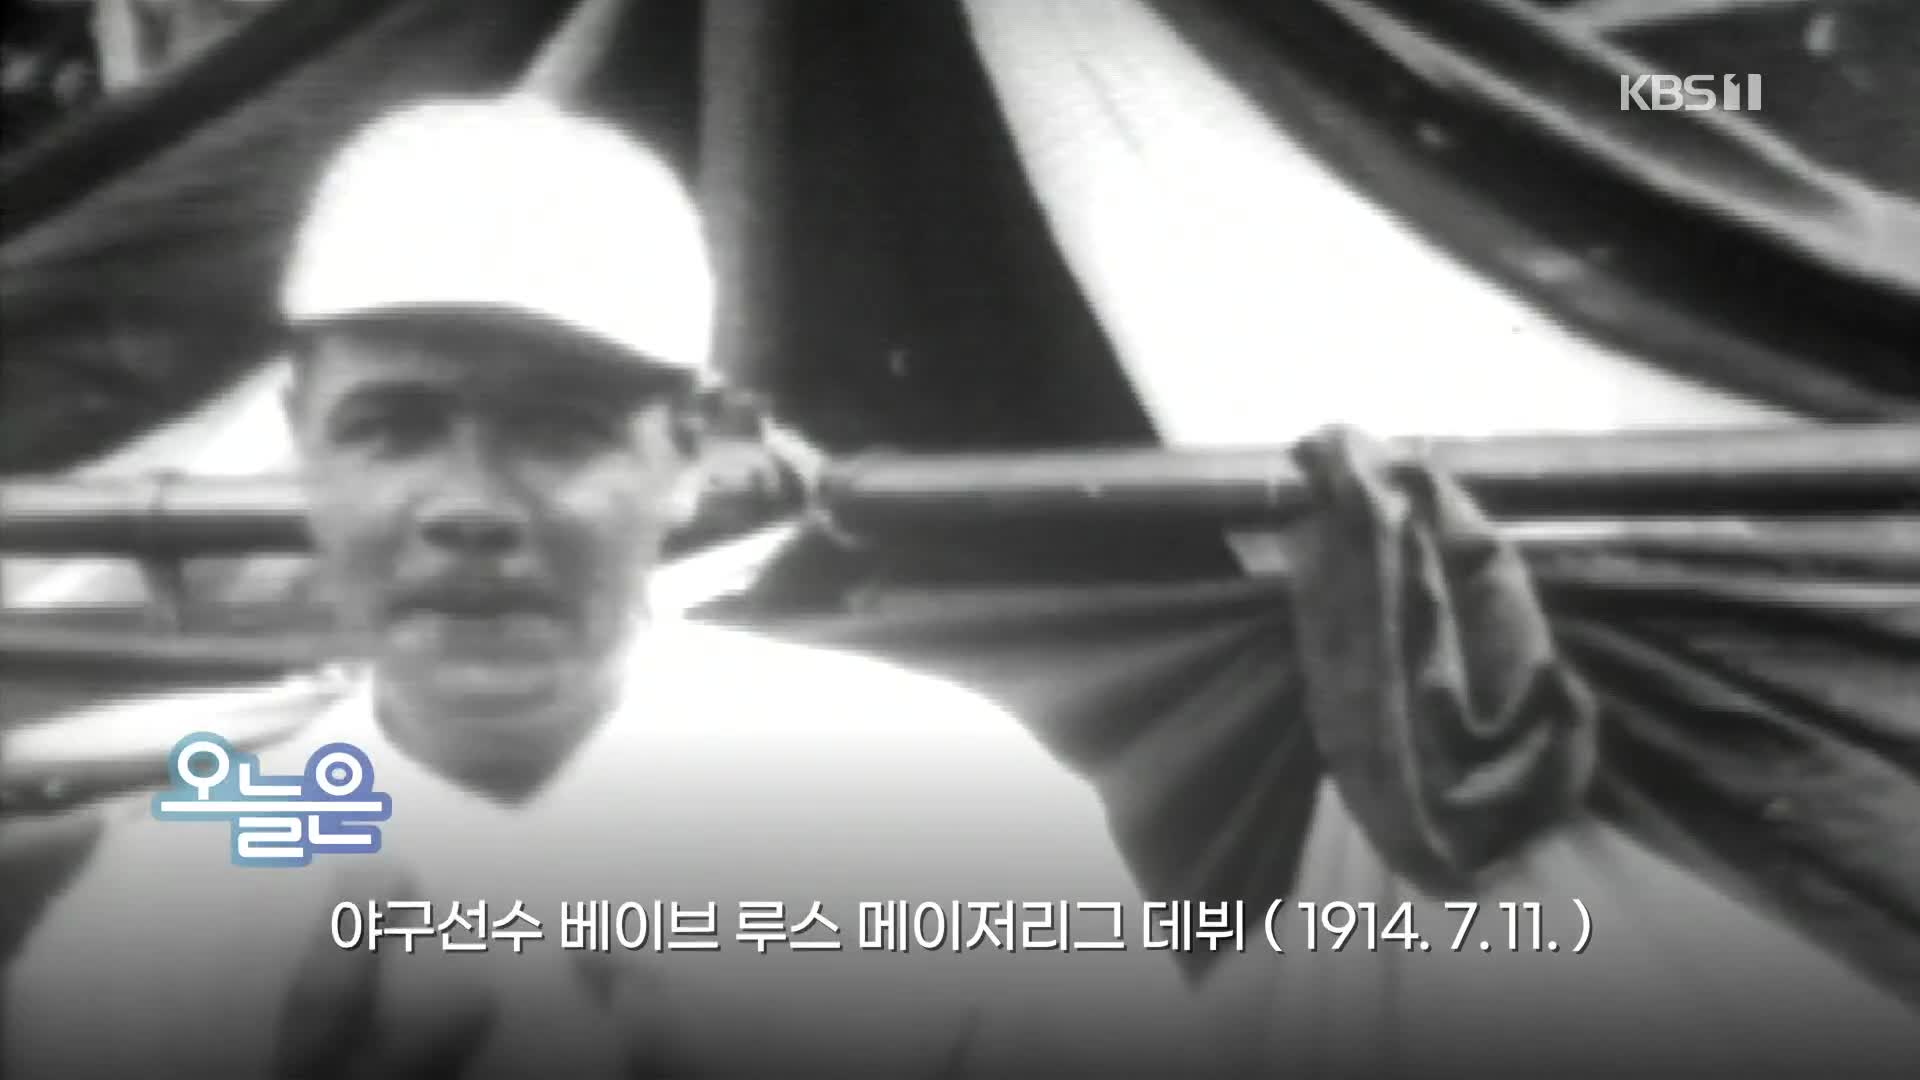 [오늘은] 야구선수 베이브 루스 메이저리그 데뷔 (1914.7.11.)